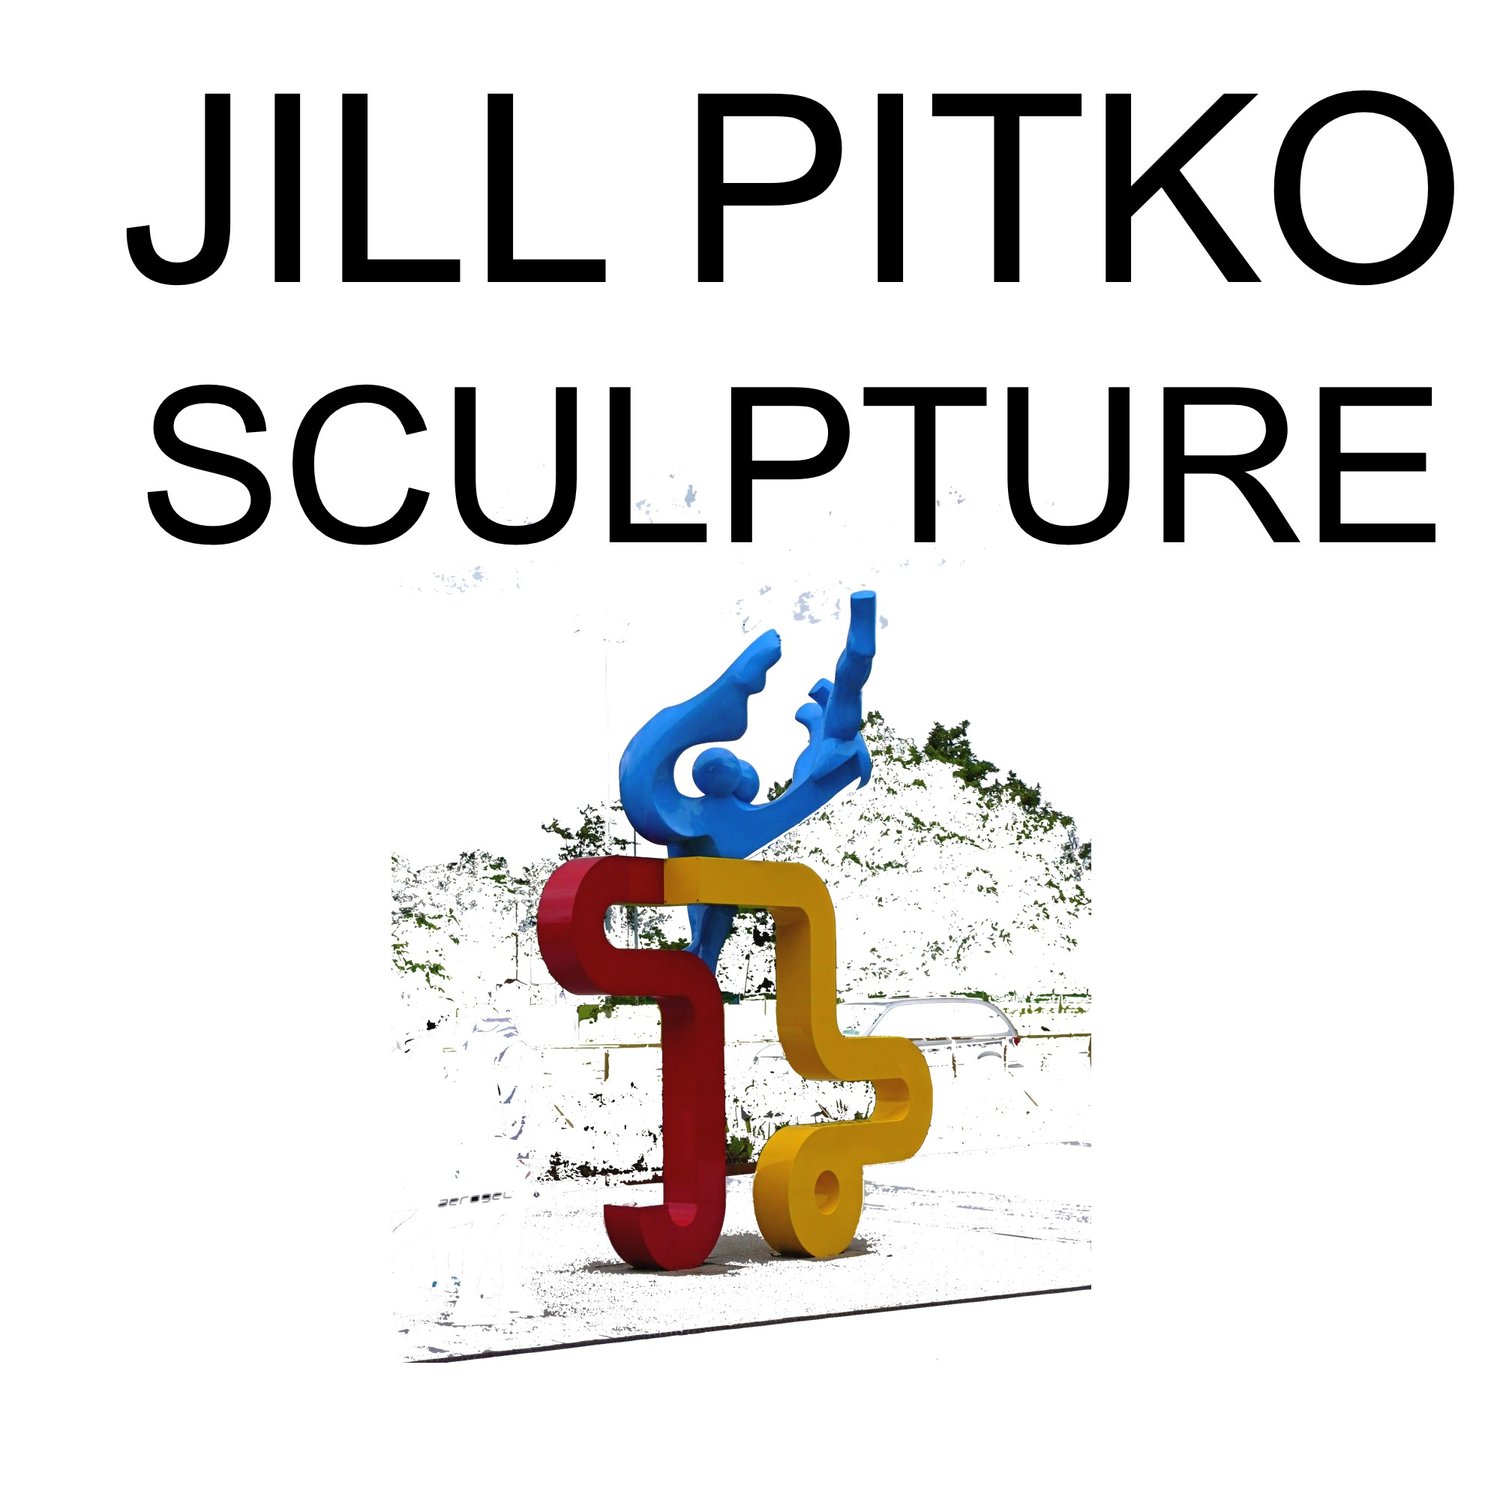 Jill Pitko Sculpture